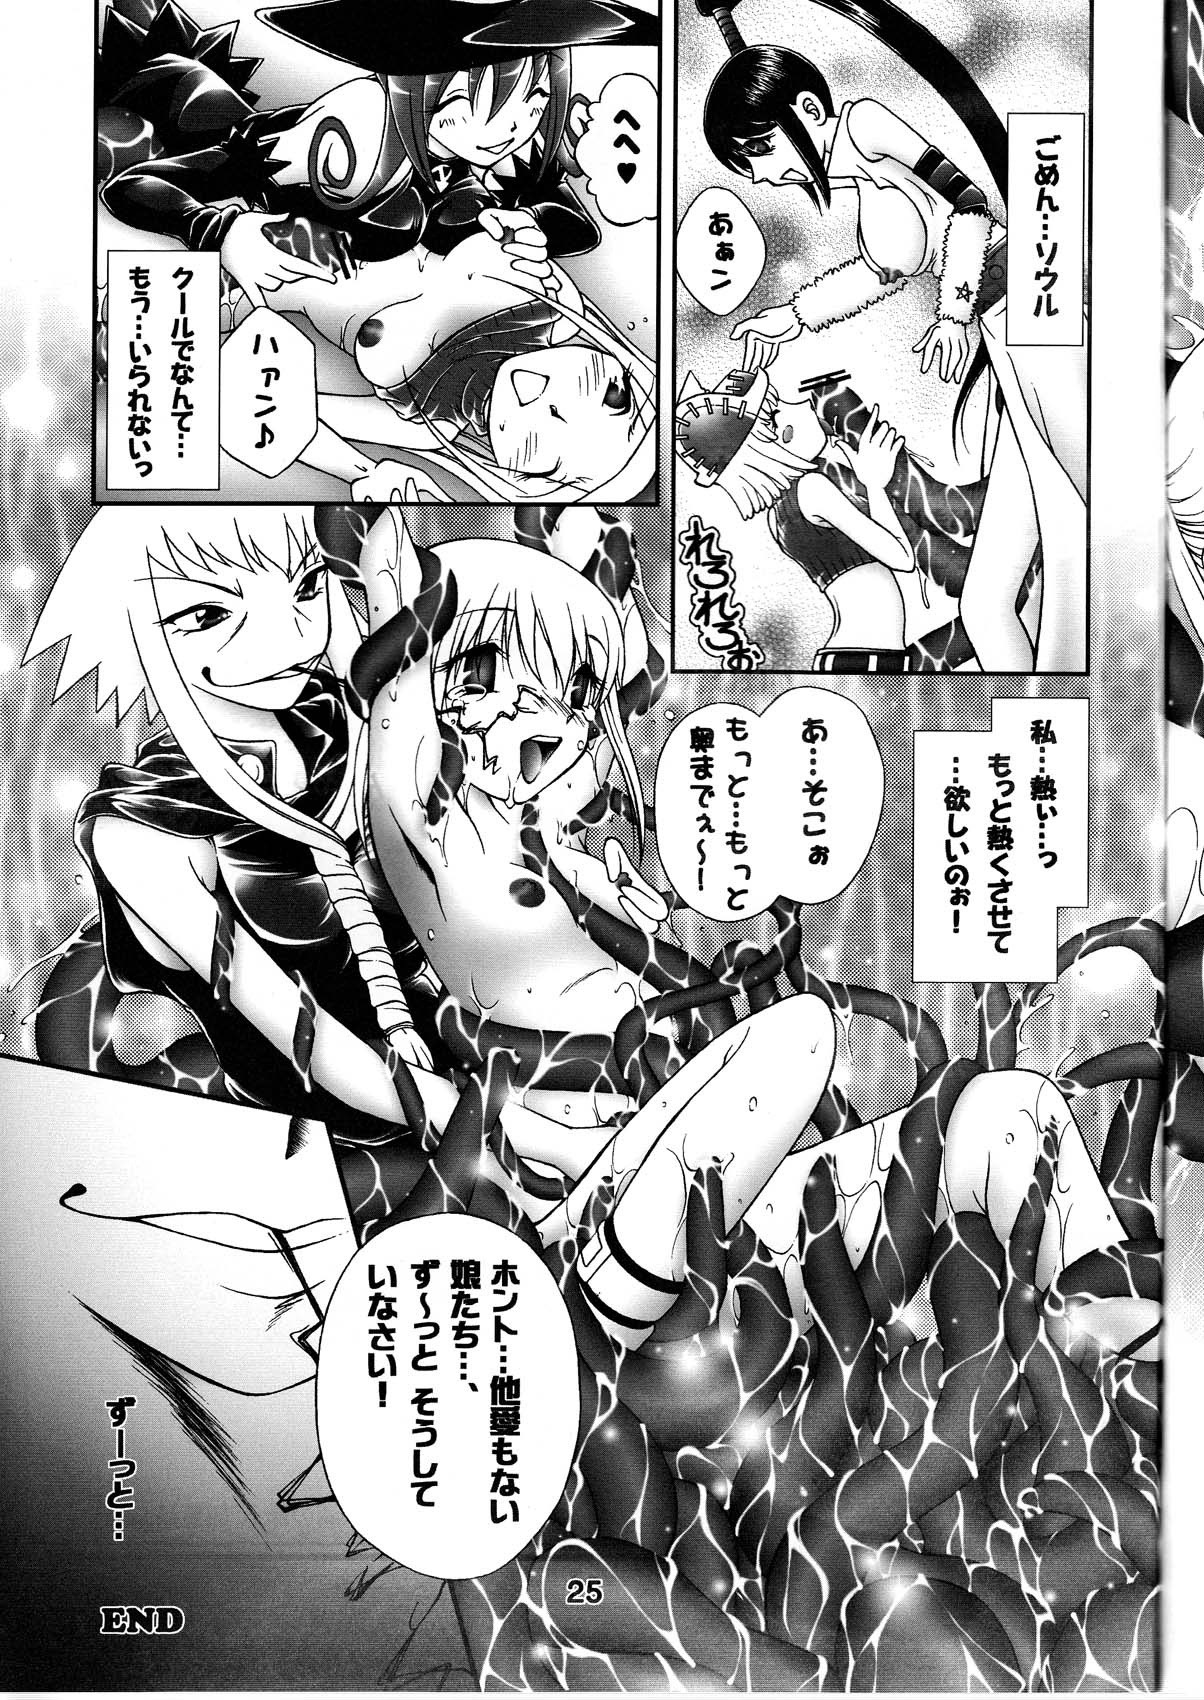 Shibusen Girl Hunting hentai manga picture 25